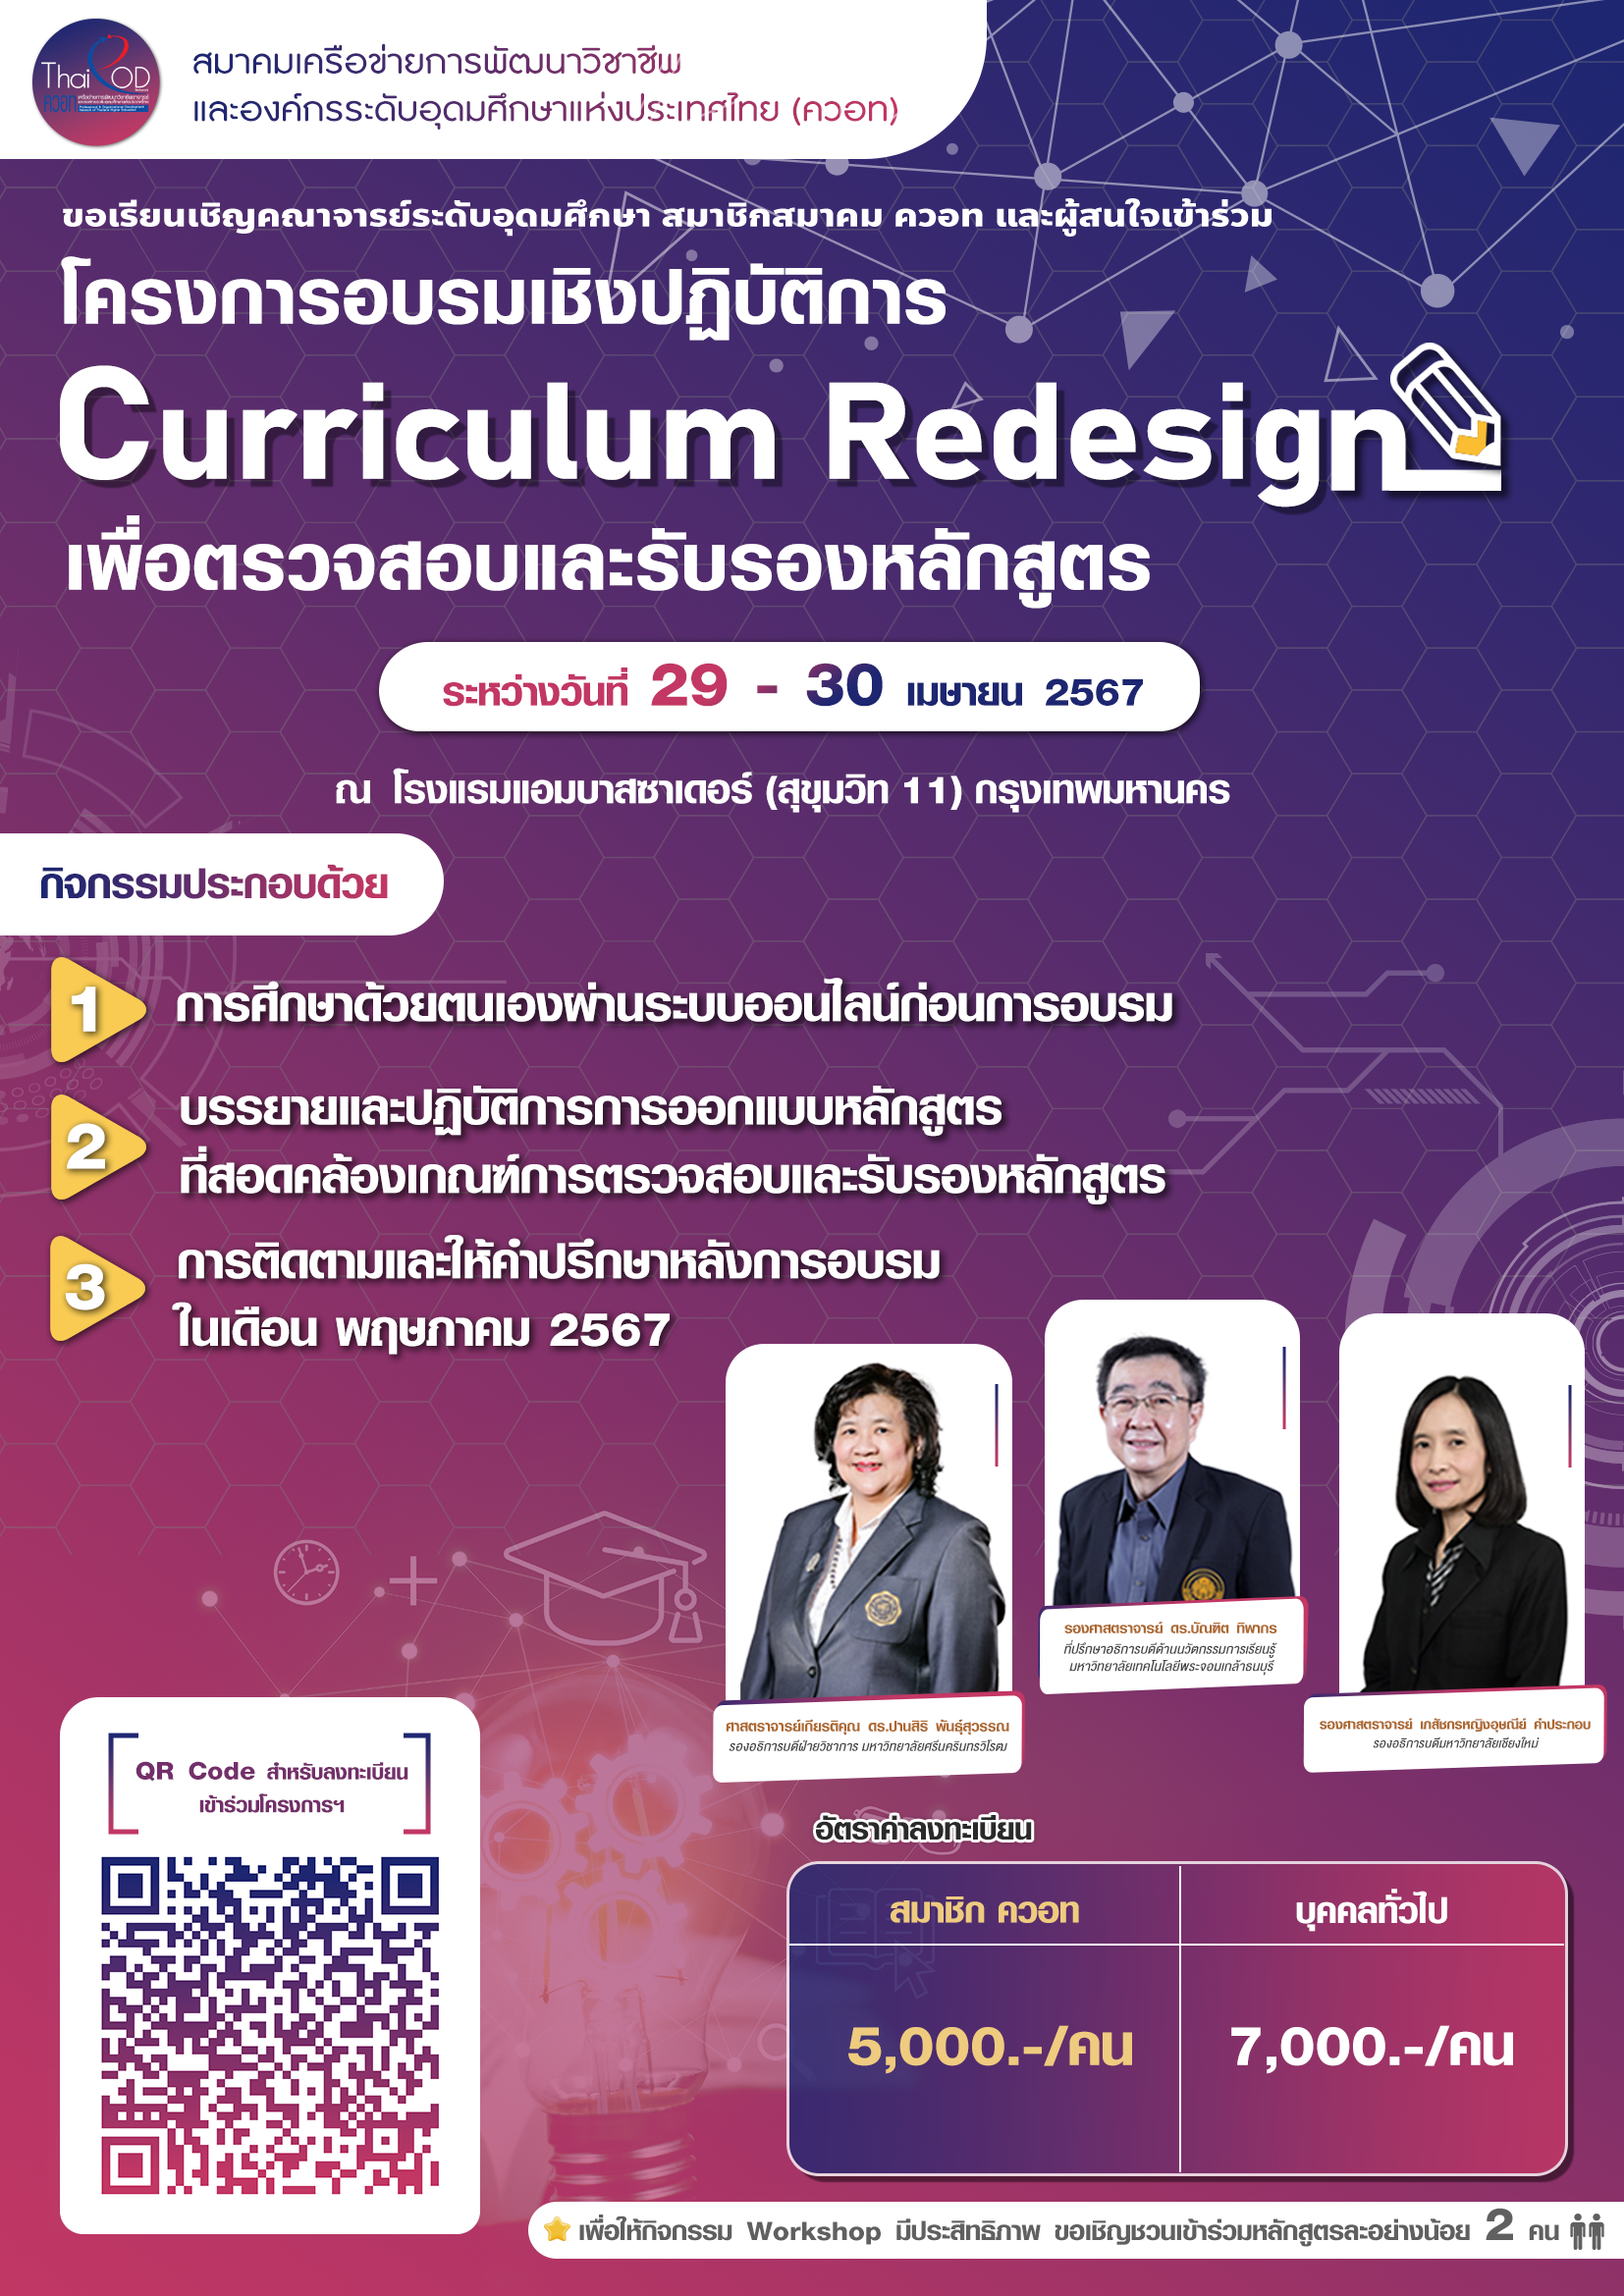 สมาคม ควอท ขอเชิญเข้าร่วมโครงการอบรมเชิงปฏิบัติการ เรื่อง Curriculum Redesign เพื่อการตรวจสอบและรับรองหลักสูตร